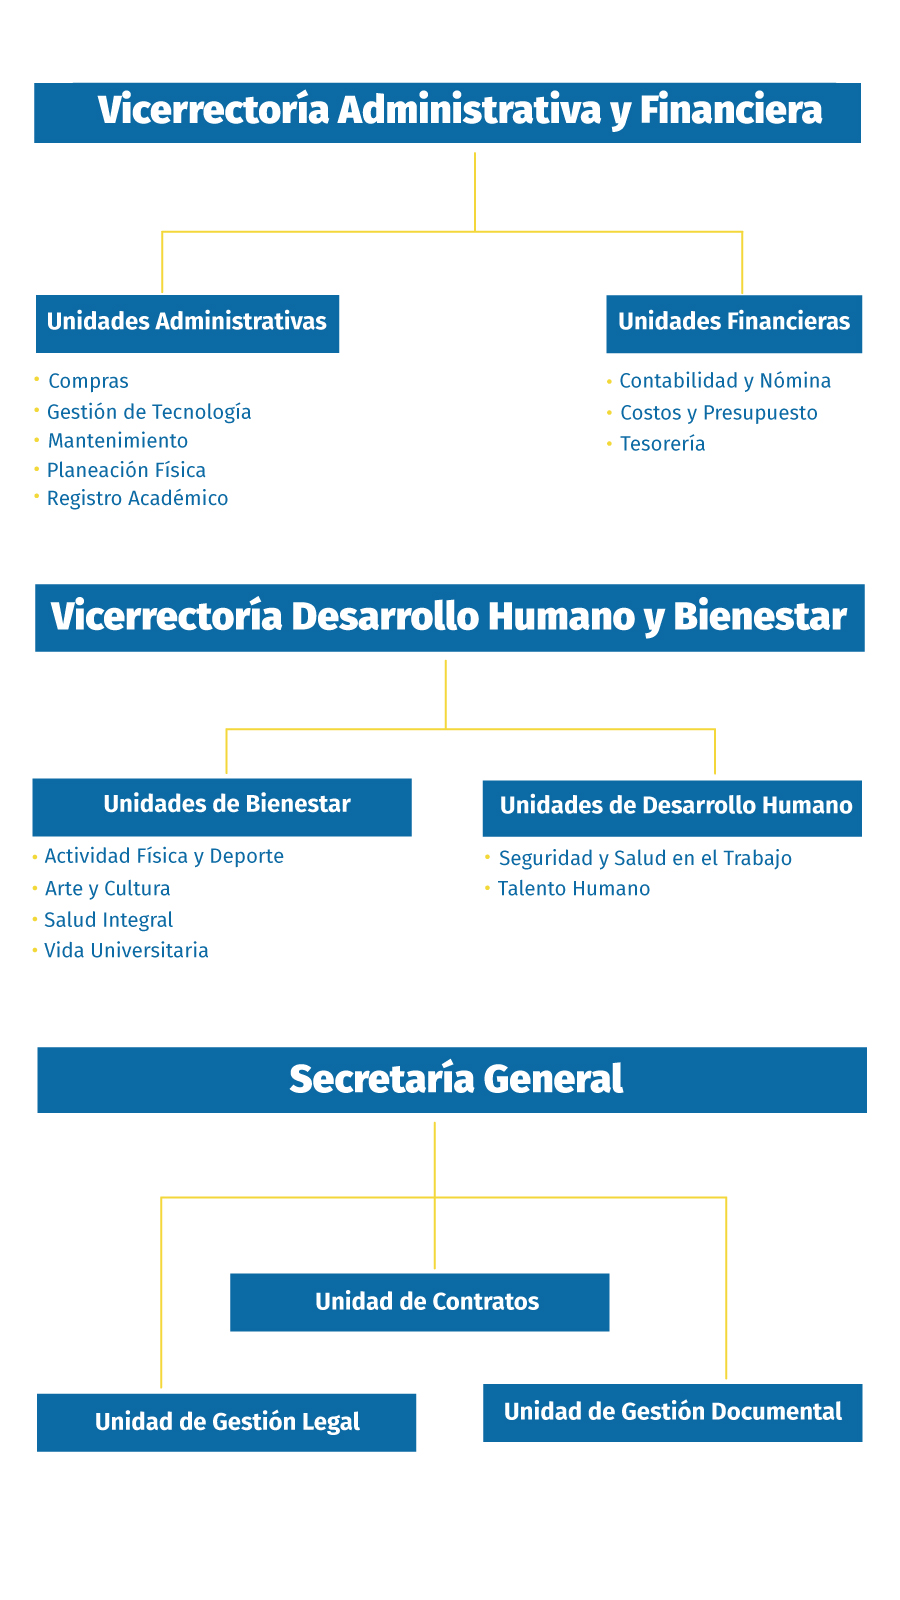 Vicerrectoría Administrativa y Vicerrectoría Desarrollo Humano